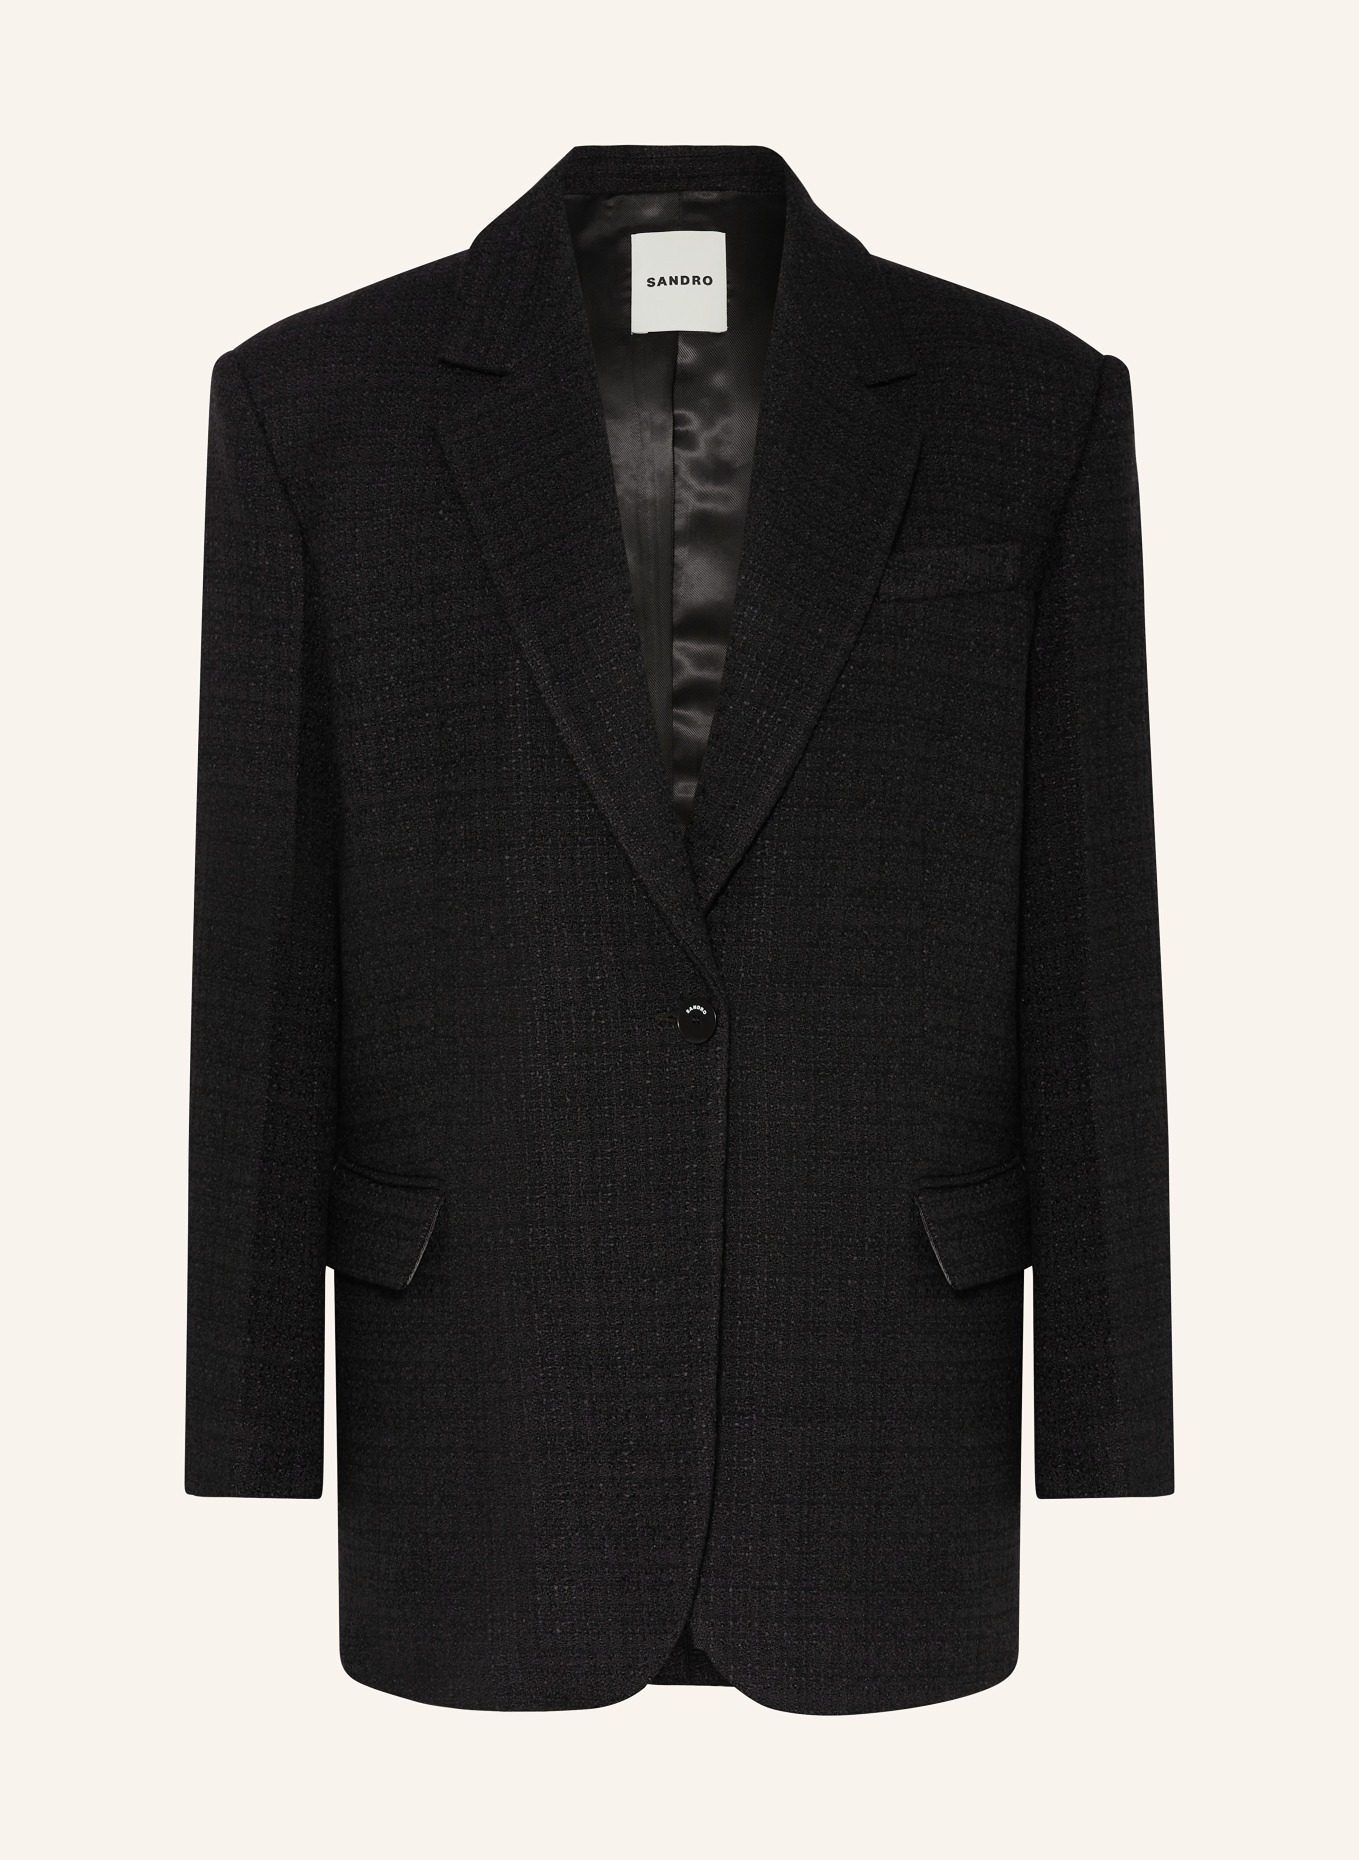 SANDRO Tweed-Blazer, Farbe: SCHWARZ (Bild 1)